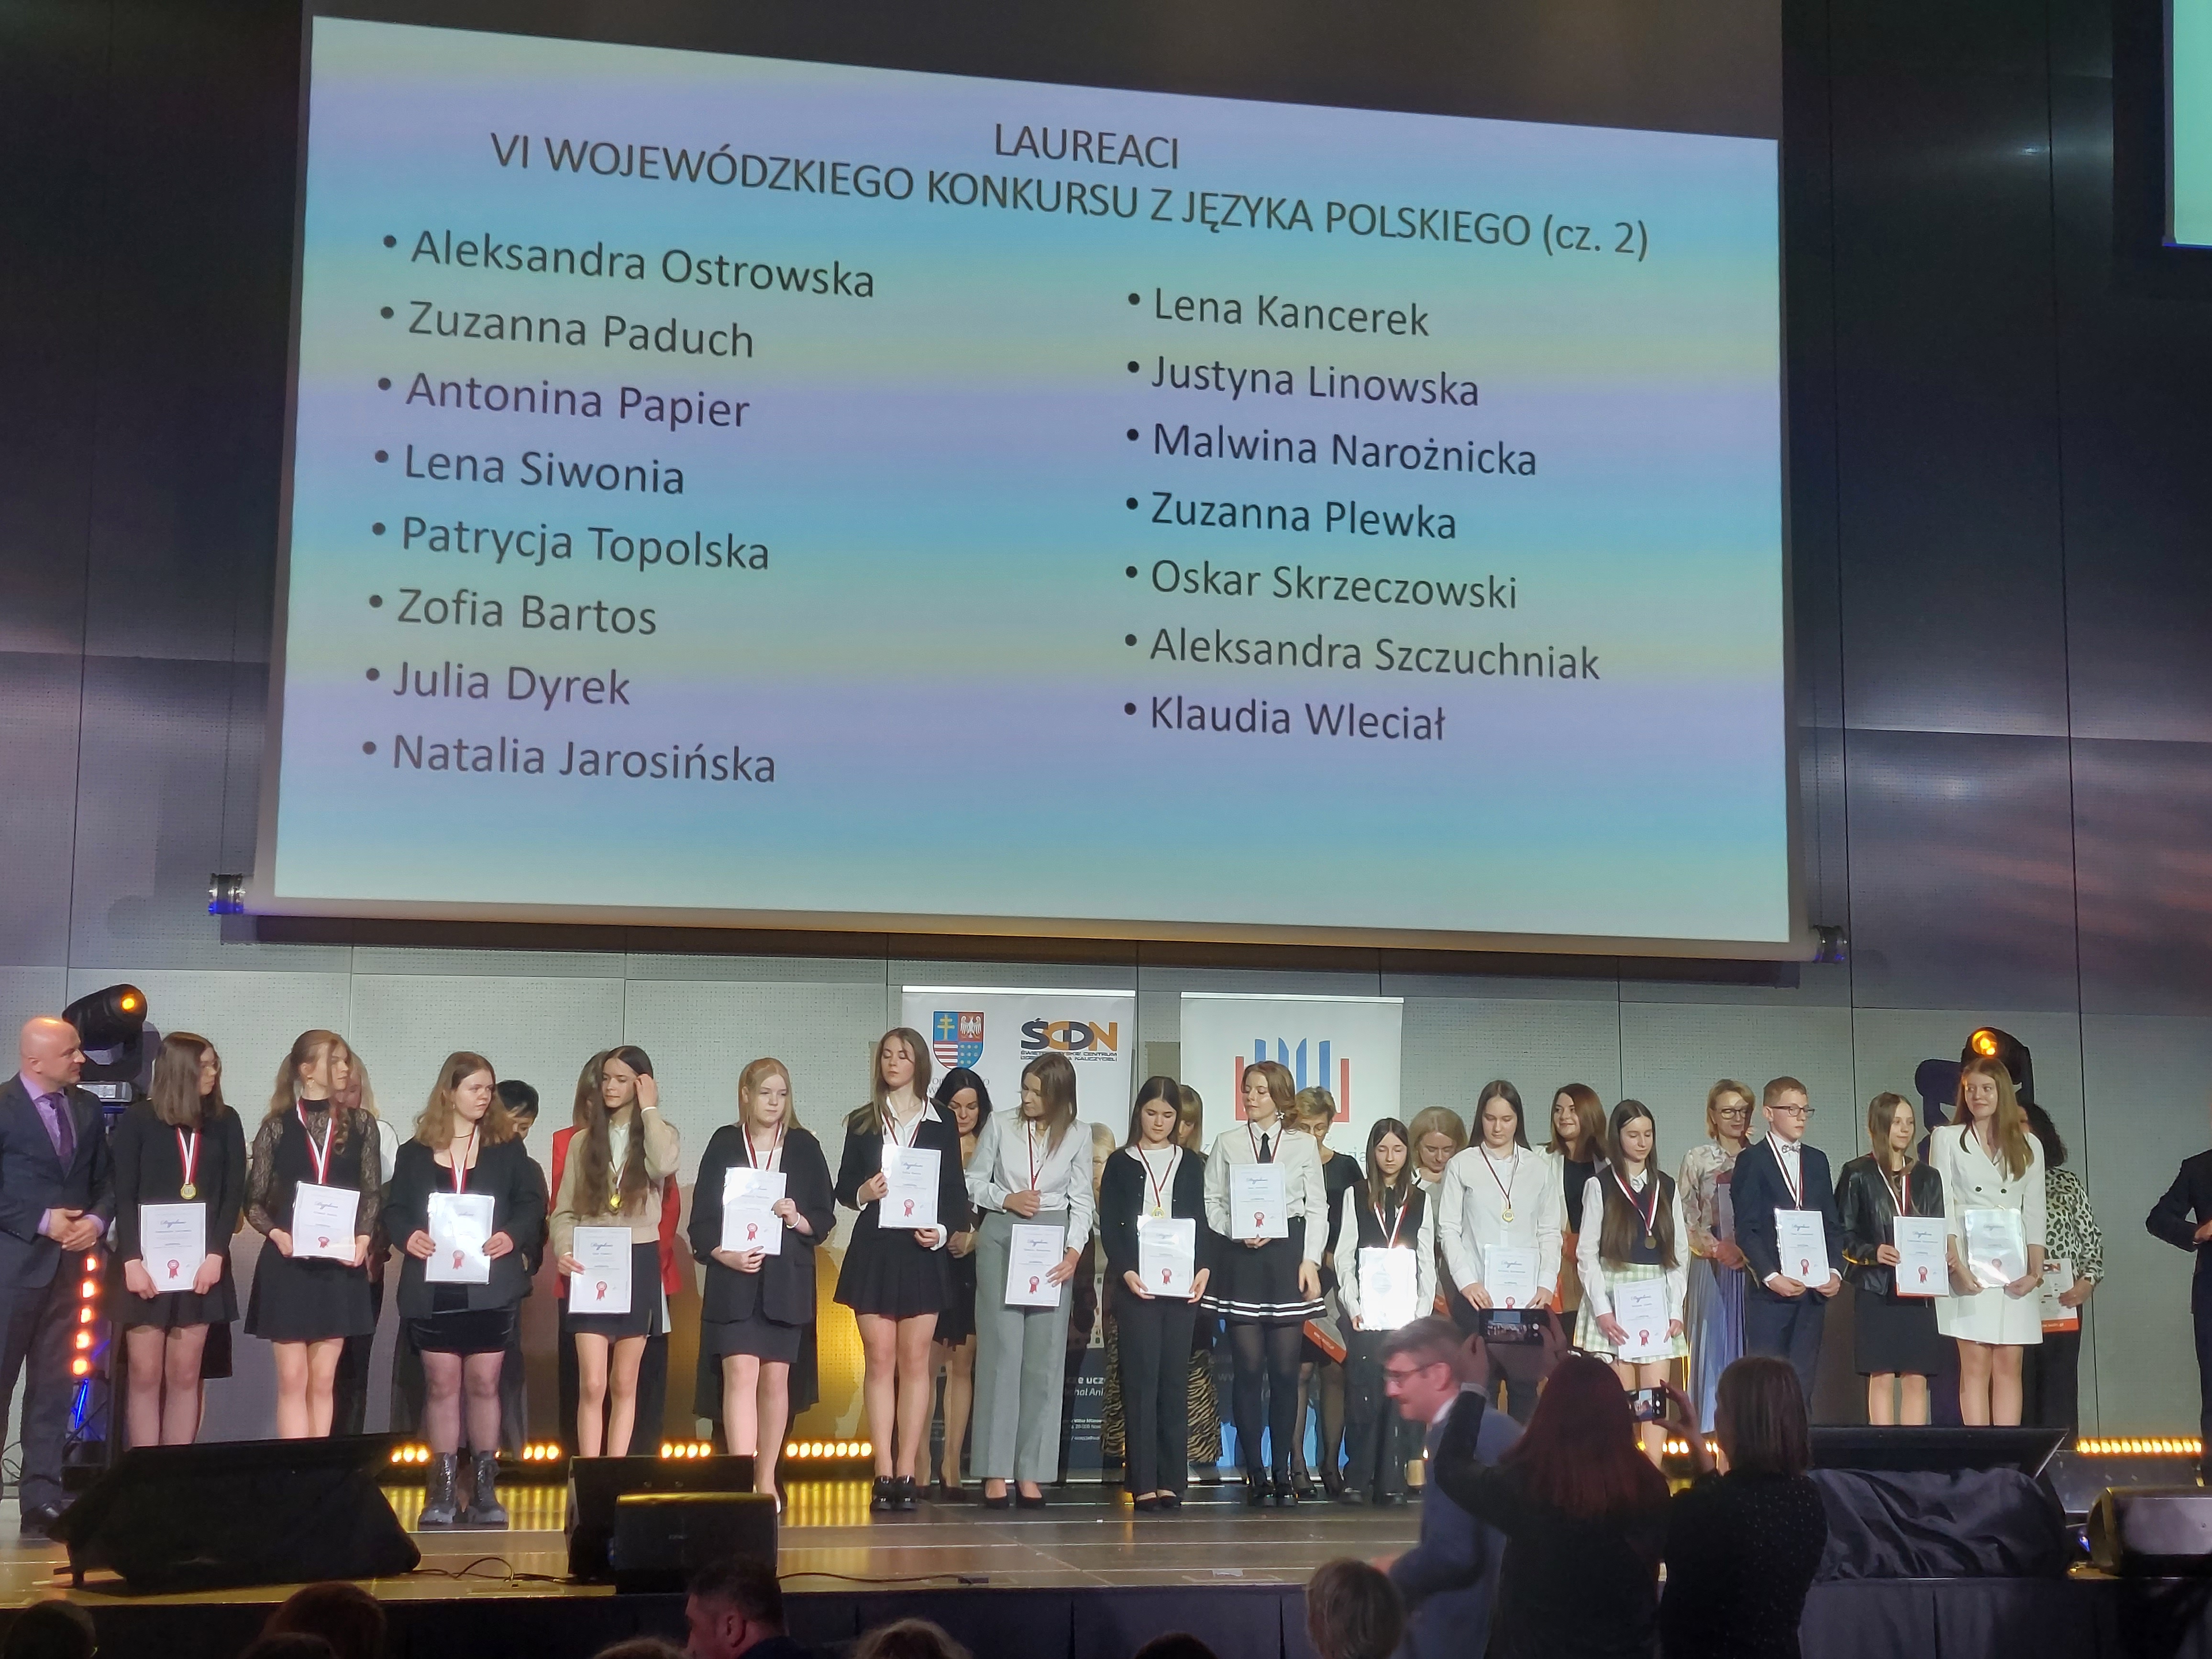 Wyświetlone nazwiska laureatów z języka polskiego, laureaci z dyplomami i medalami